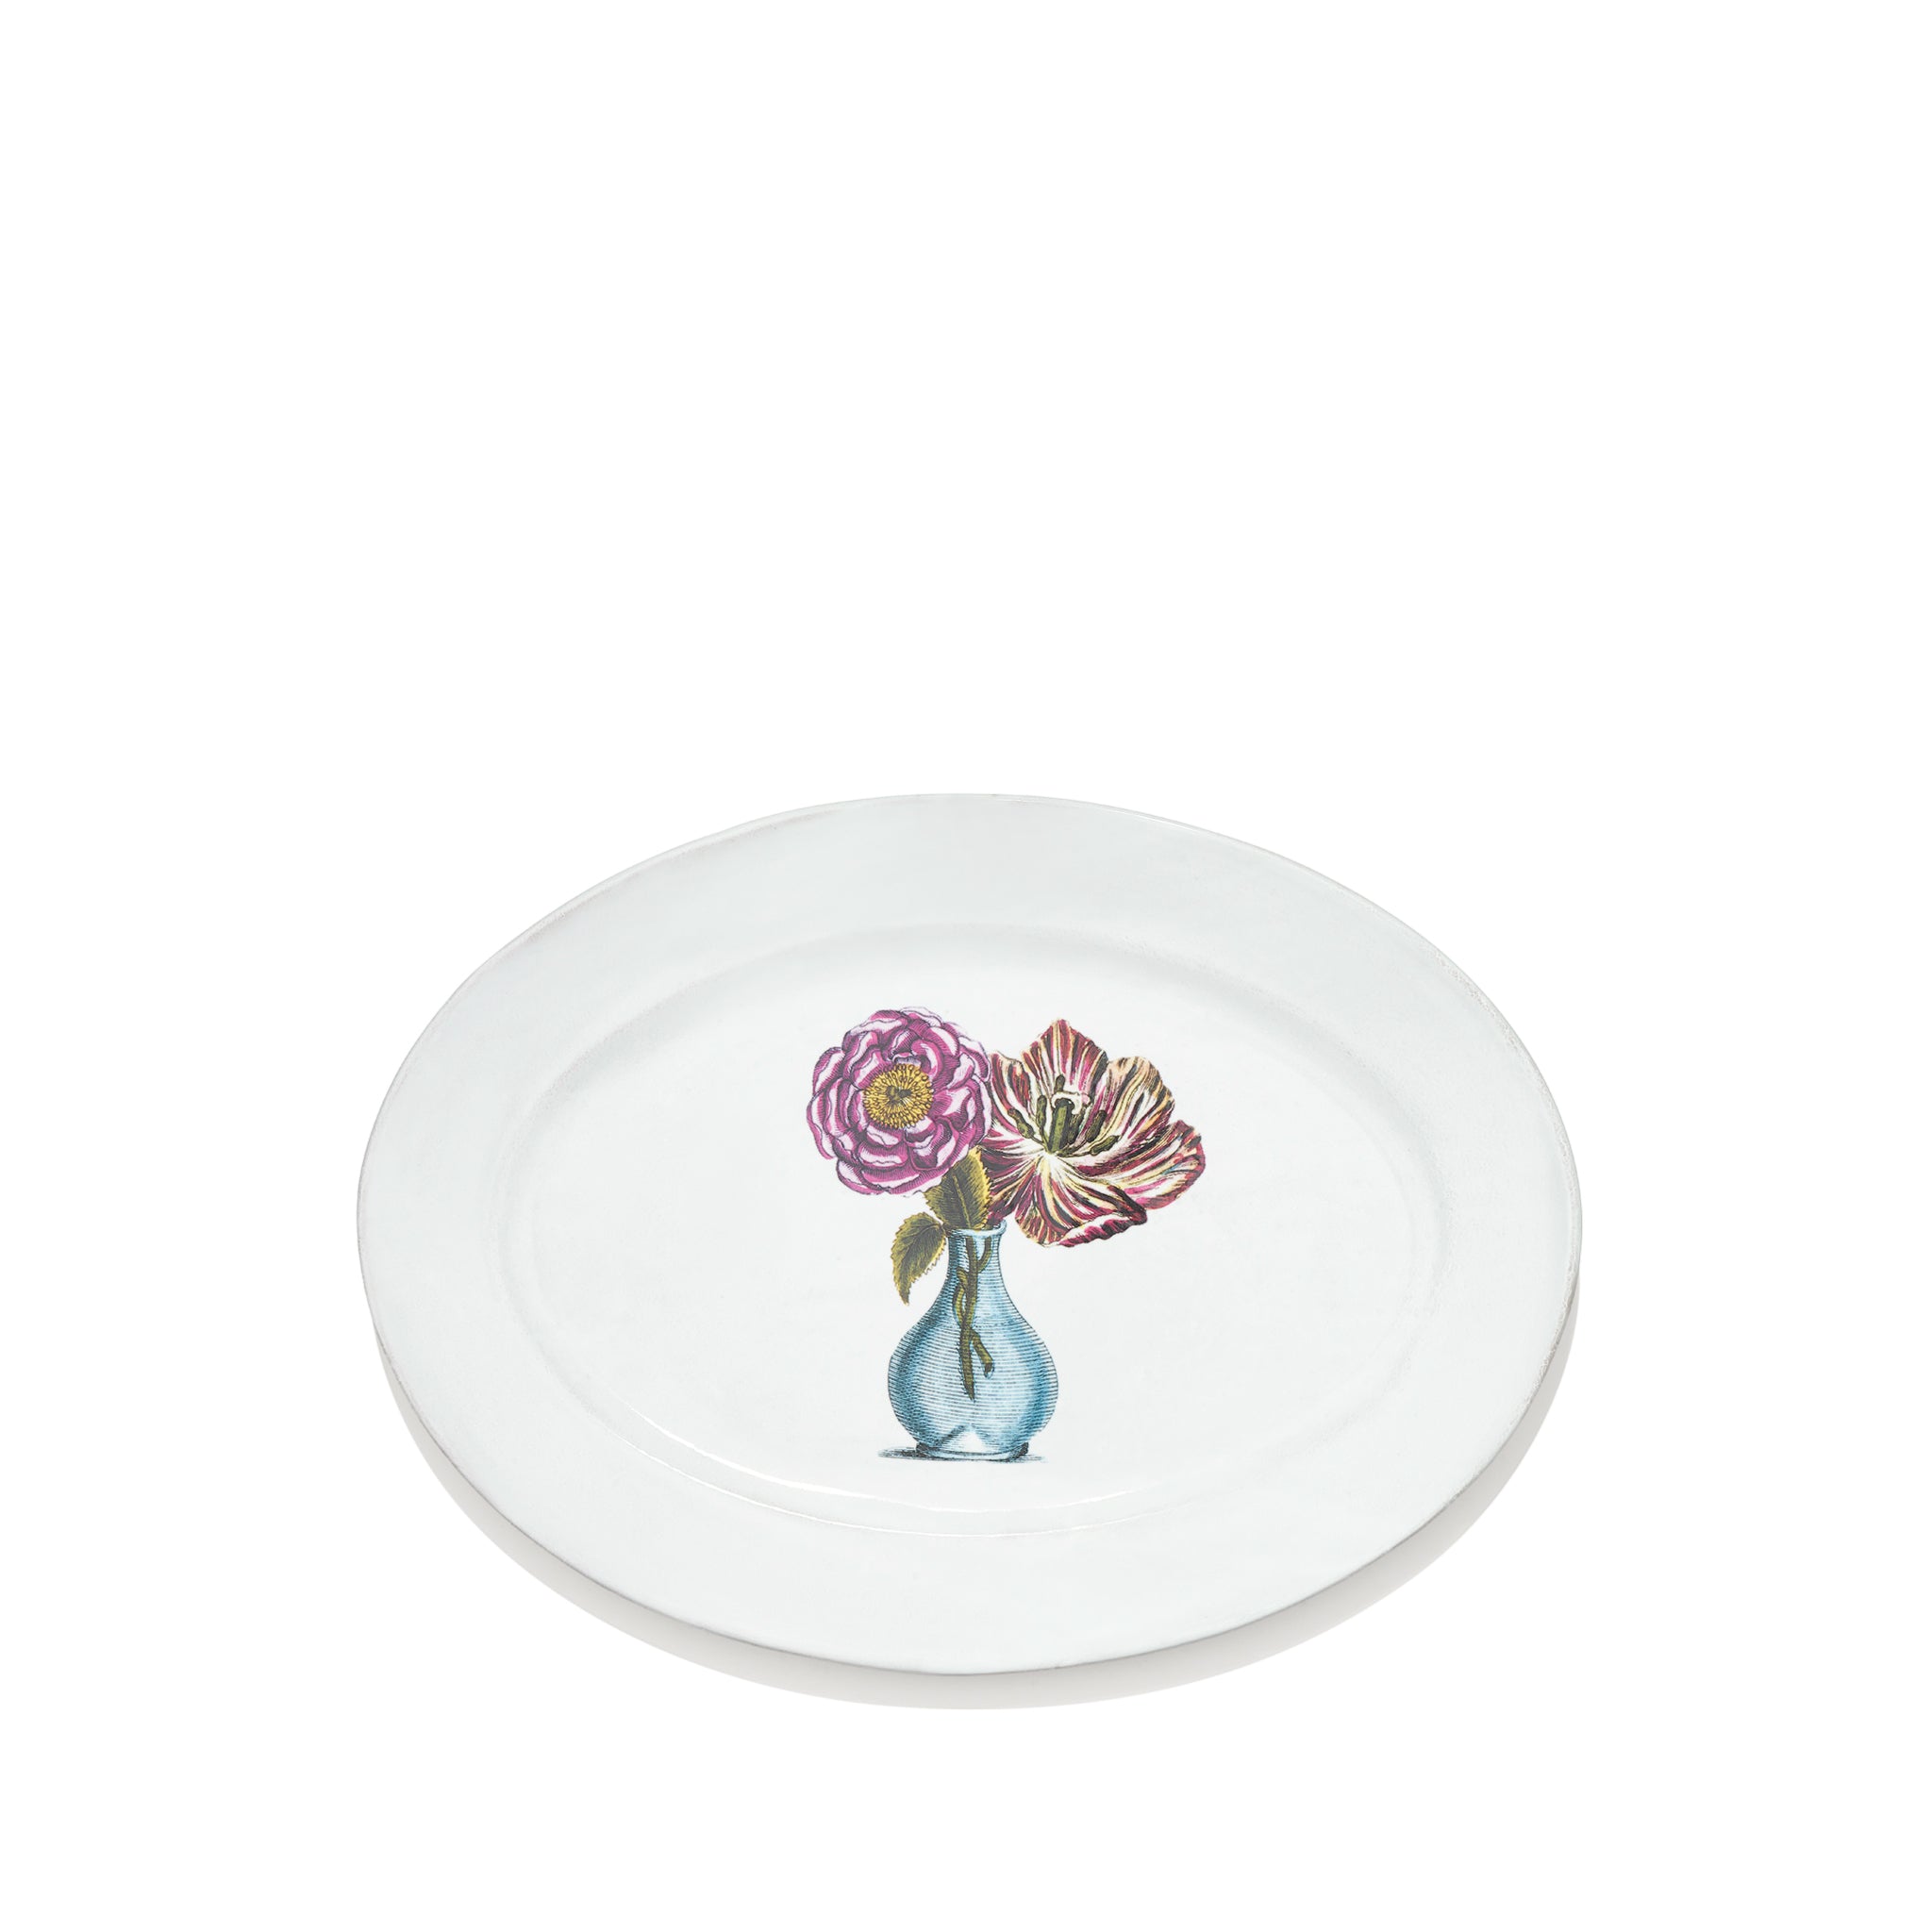 Blue Vase with Flowers Platter by Astier de Villatte, 41cm